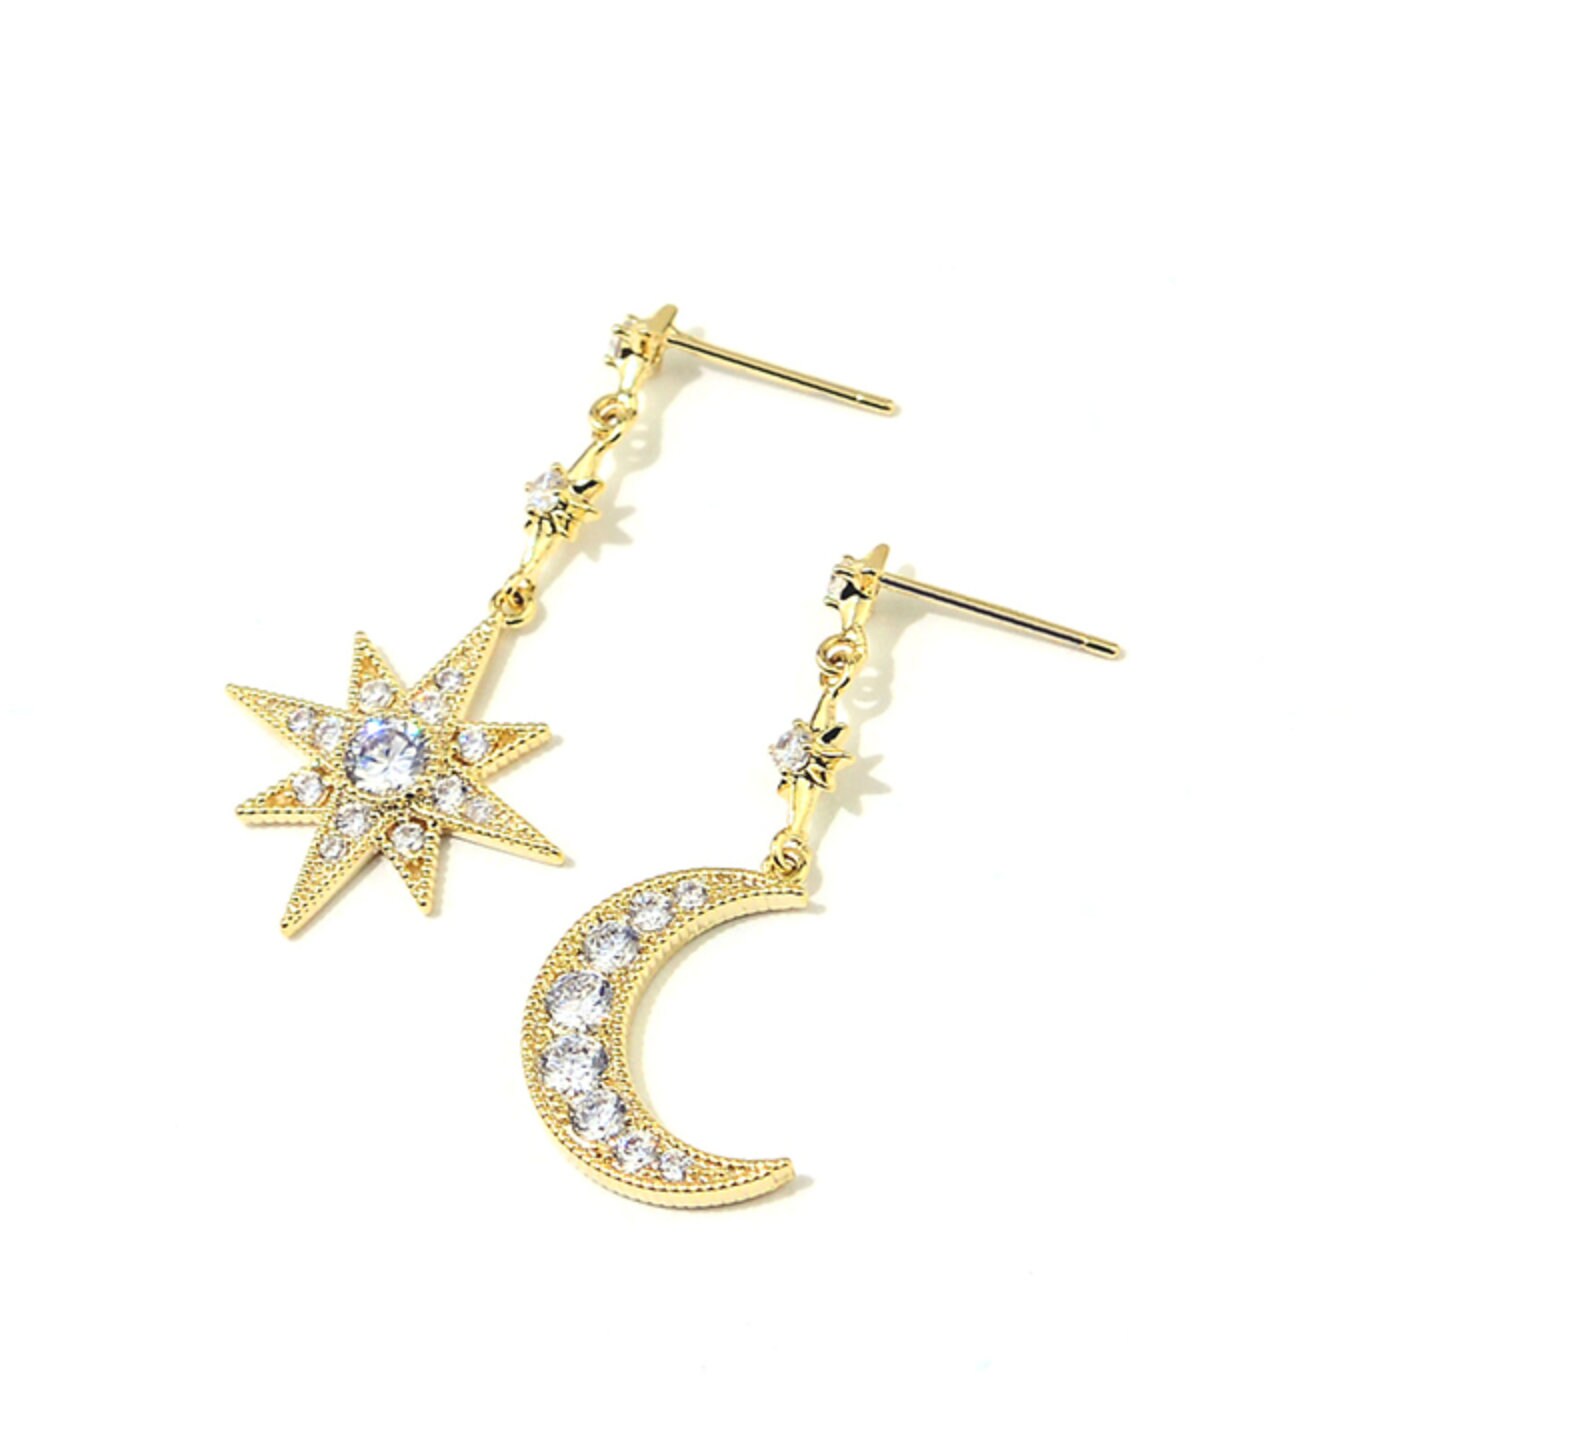 Moon and star earrings moon drop earrings star earrings | Etsy